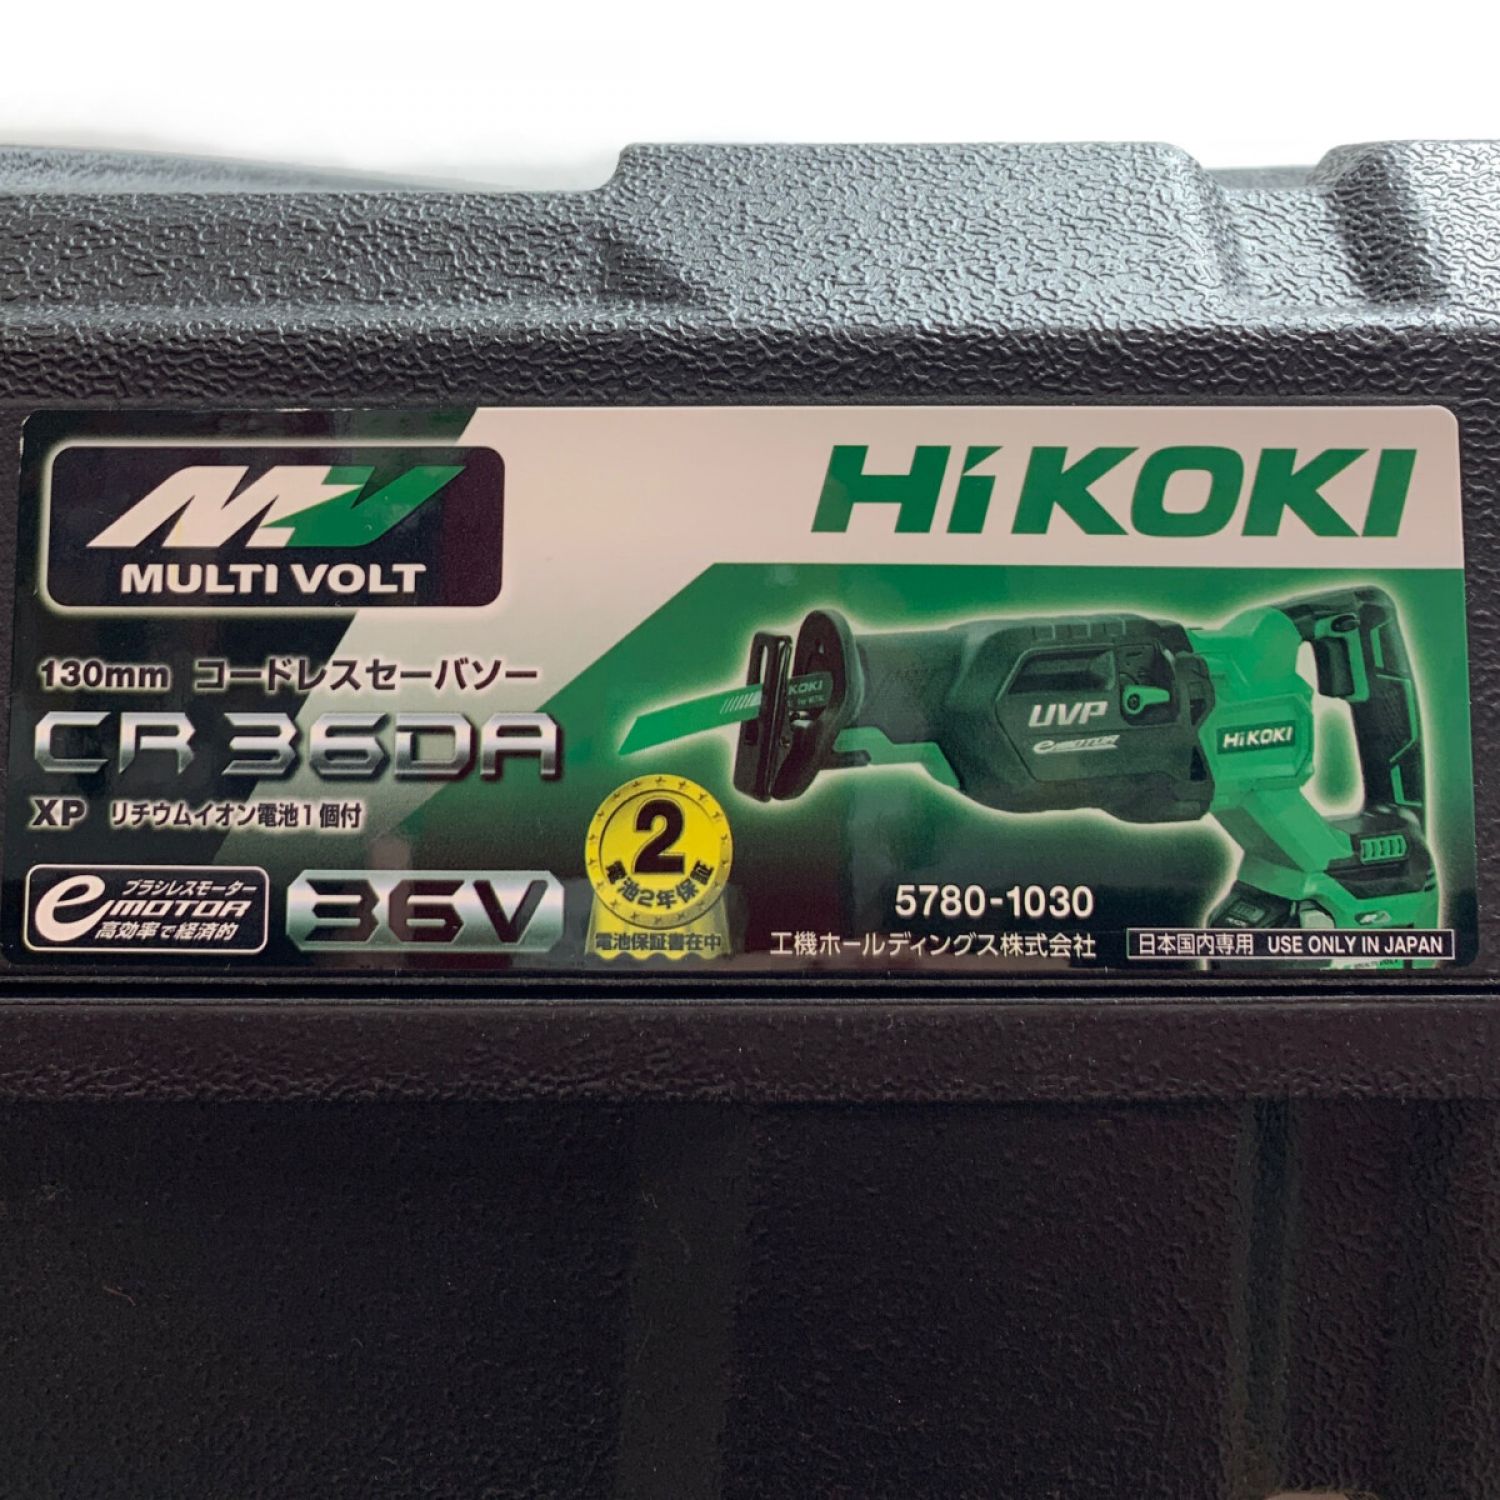 未使用品HiKoki製コードレスセーバソー（電動のこぎり）CR36DA